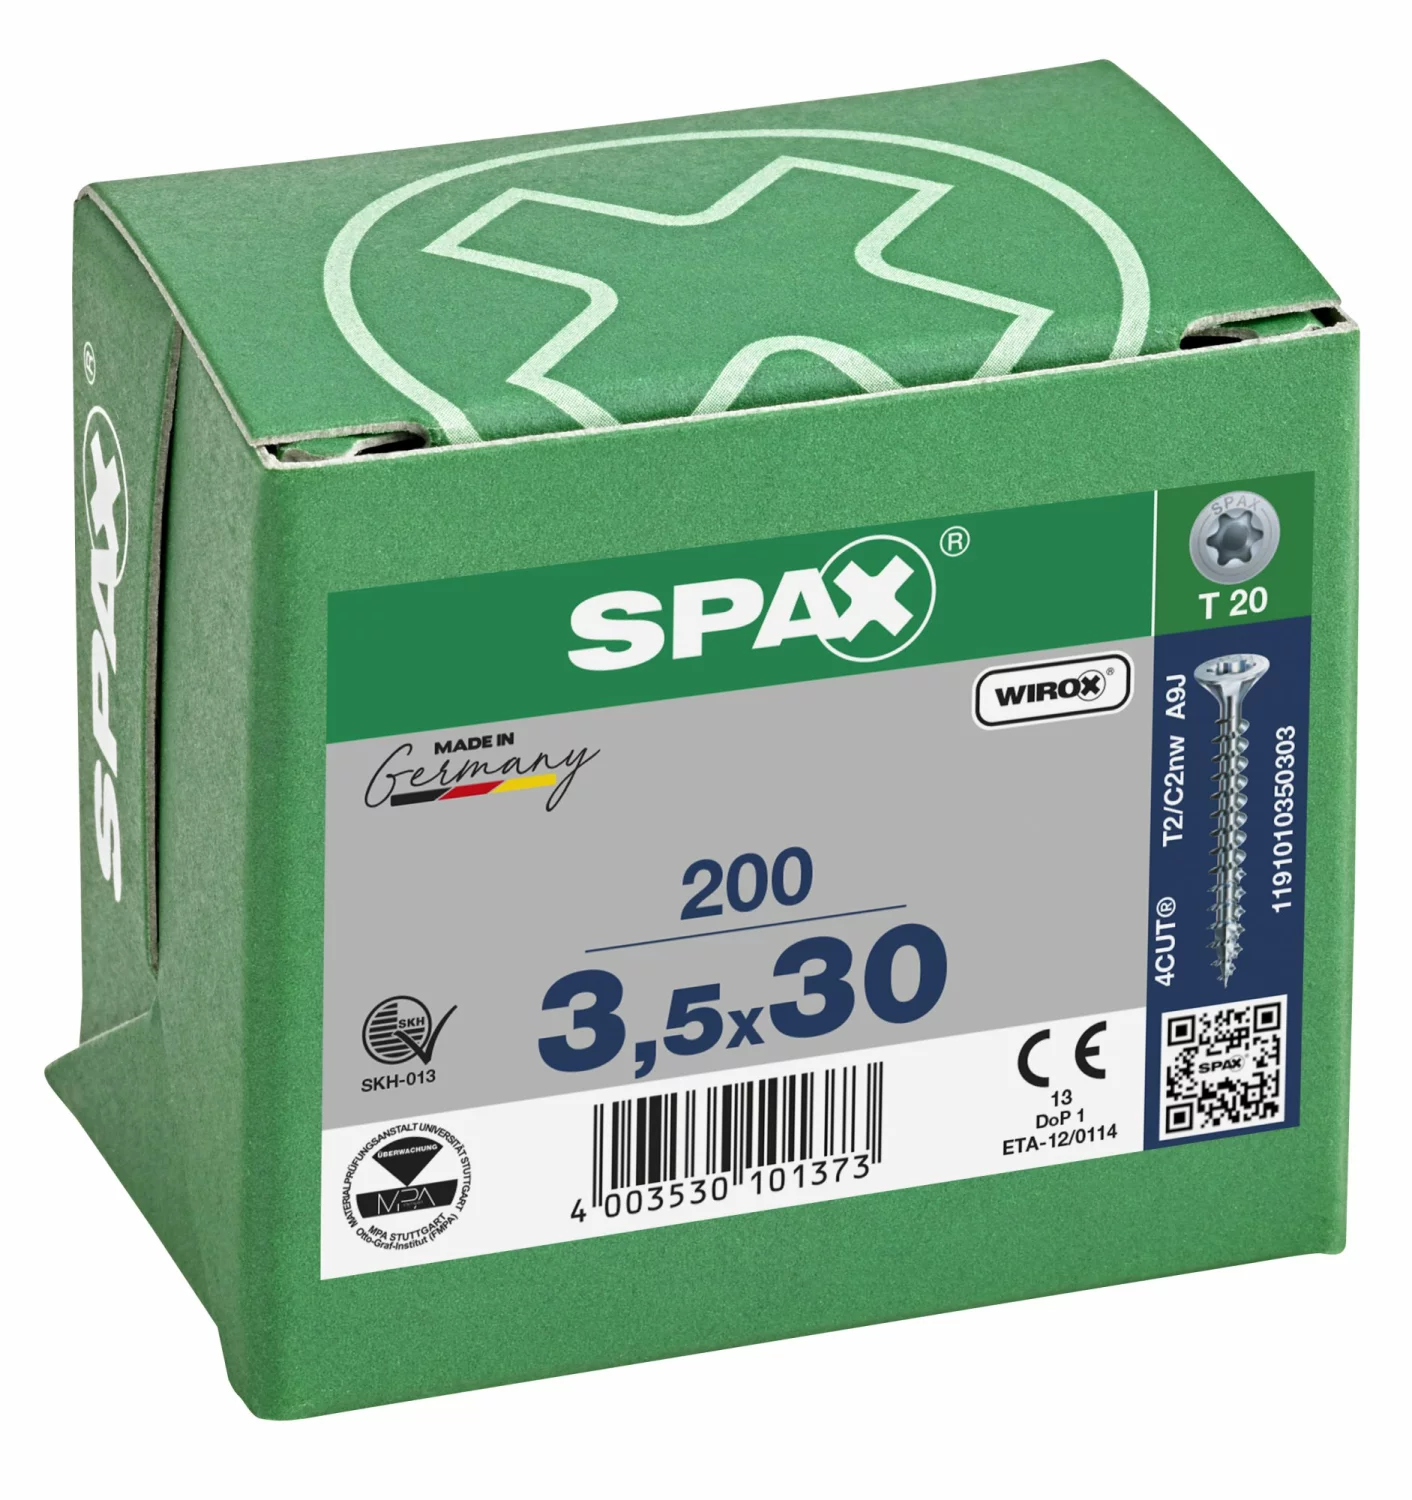 SPAX 1191010350303 Universele schroef, Verzonken kop, 3.5 x 30, Voldraad, T-STAR plus T20 - WIROX - 200 stuks-image